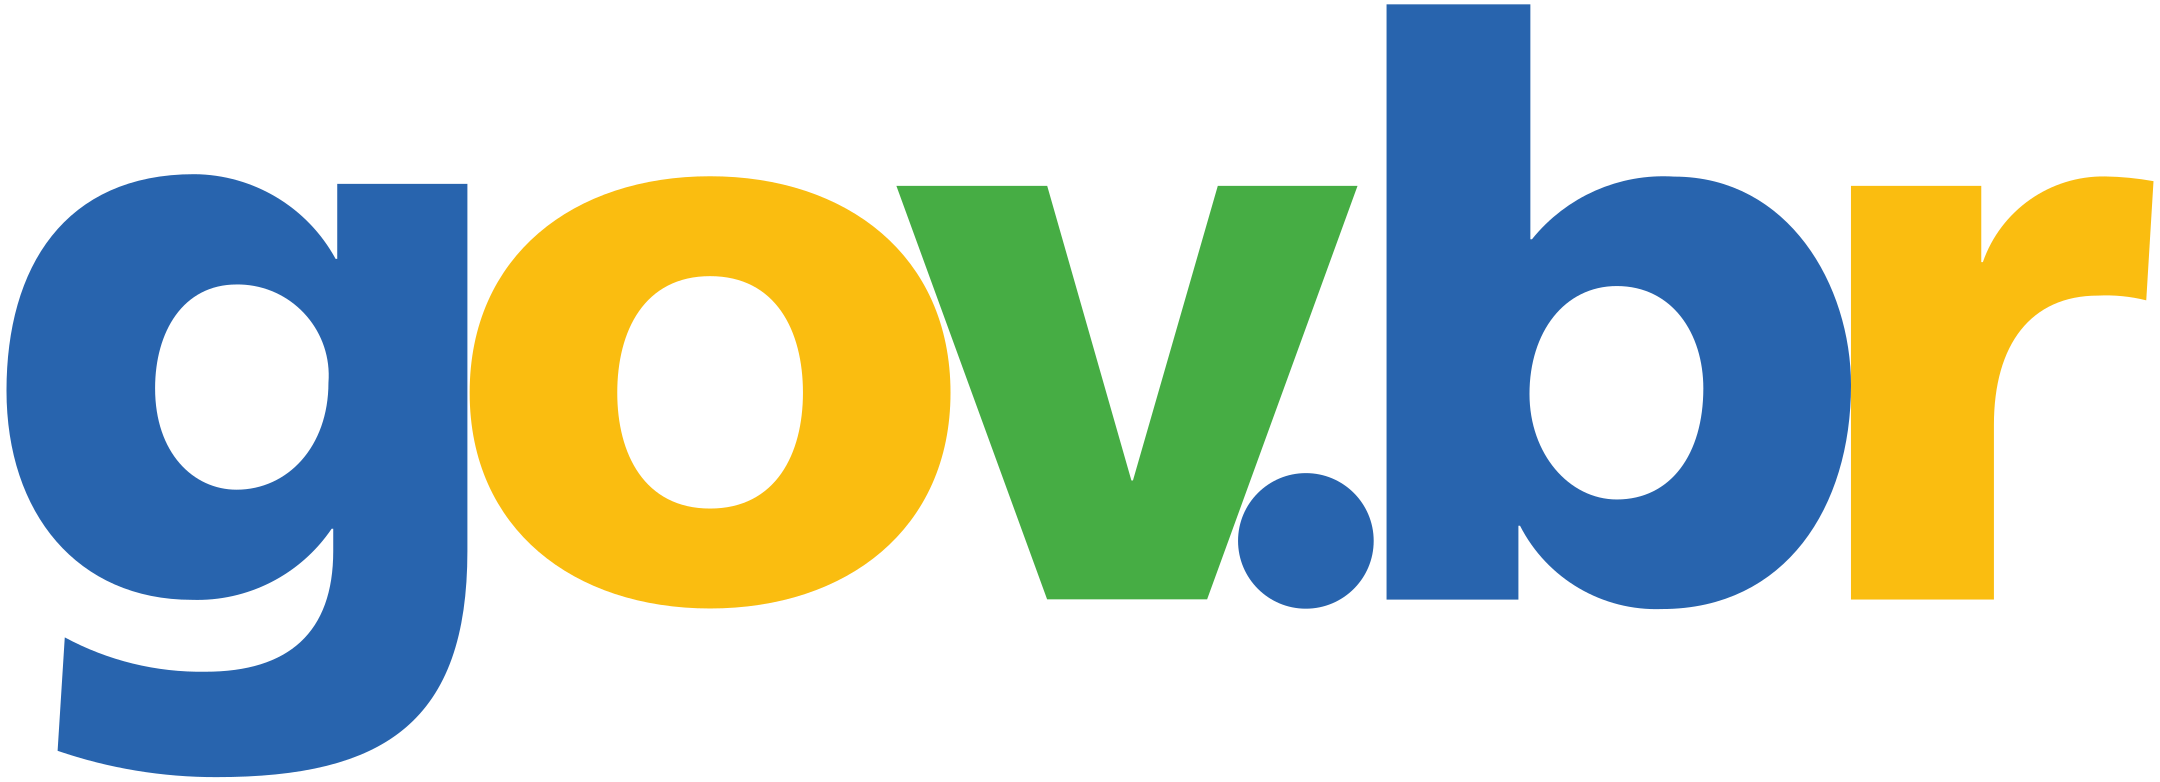 gov.br Logo.